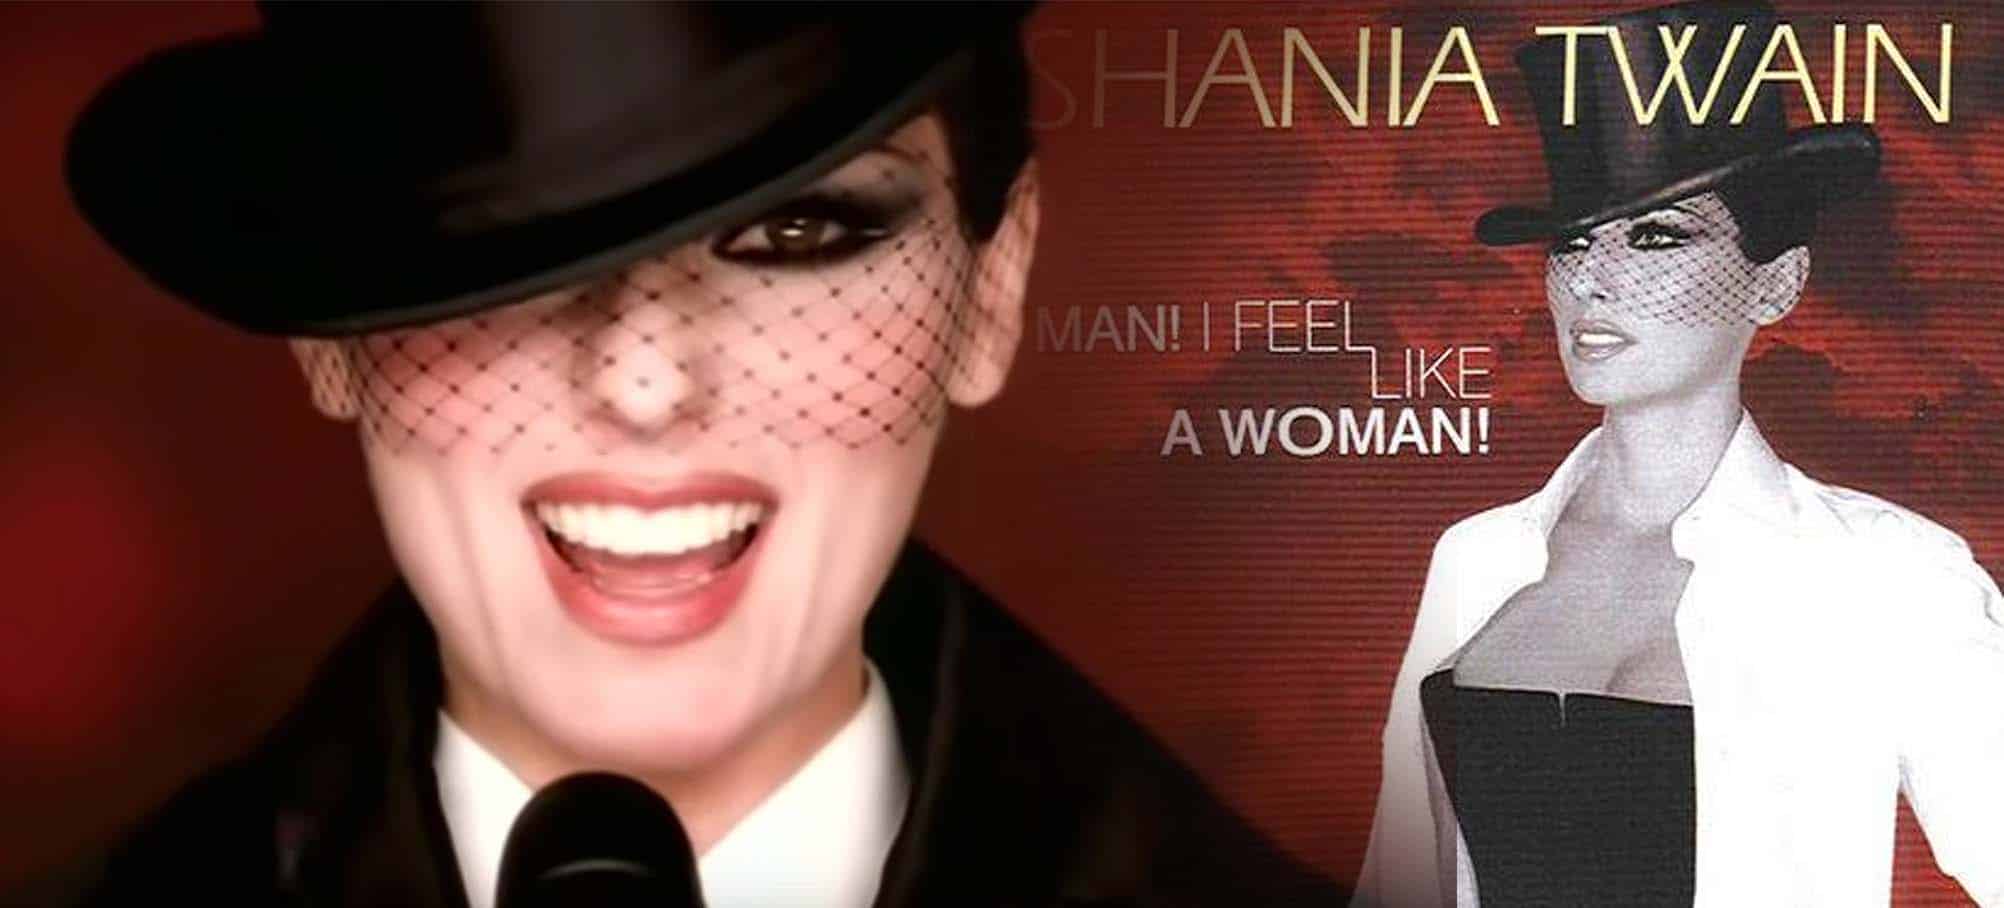 Shania Twain's "Man! I Feel Like A Woman"